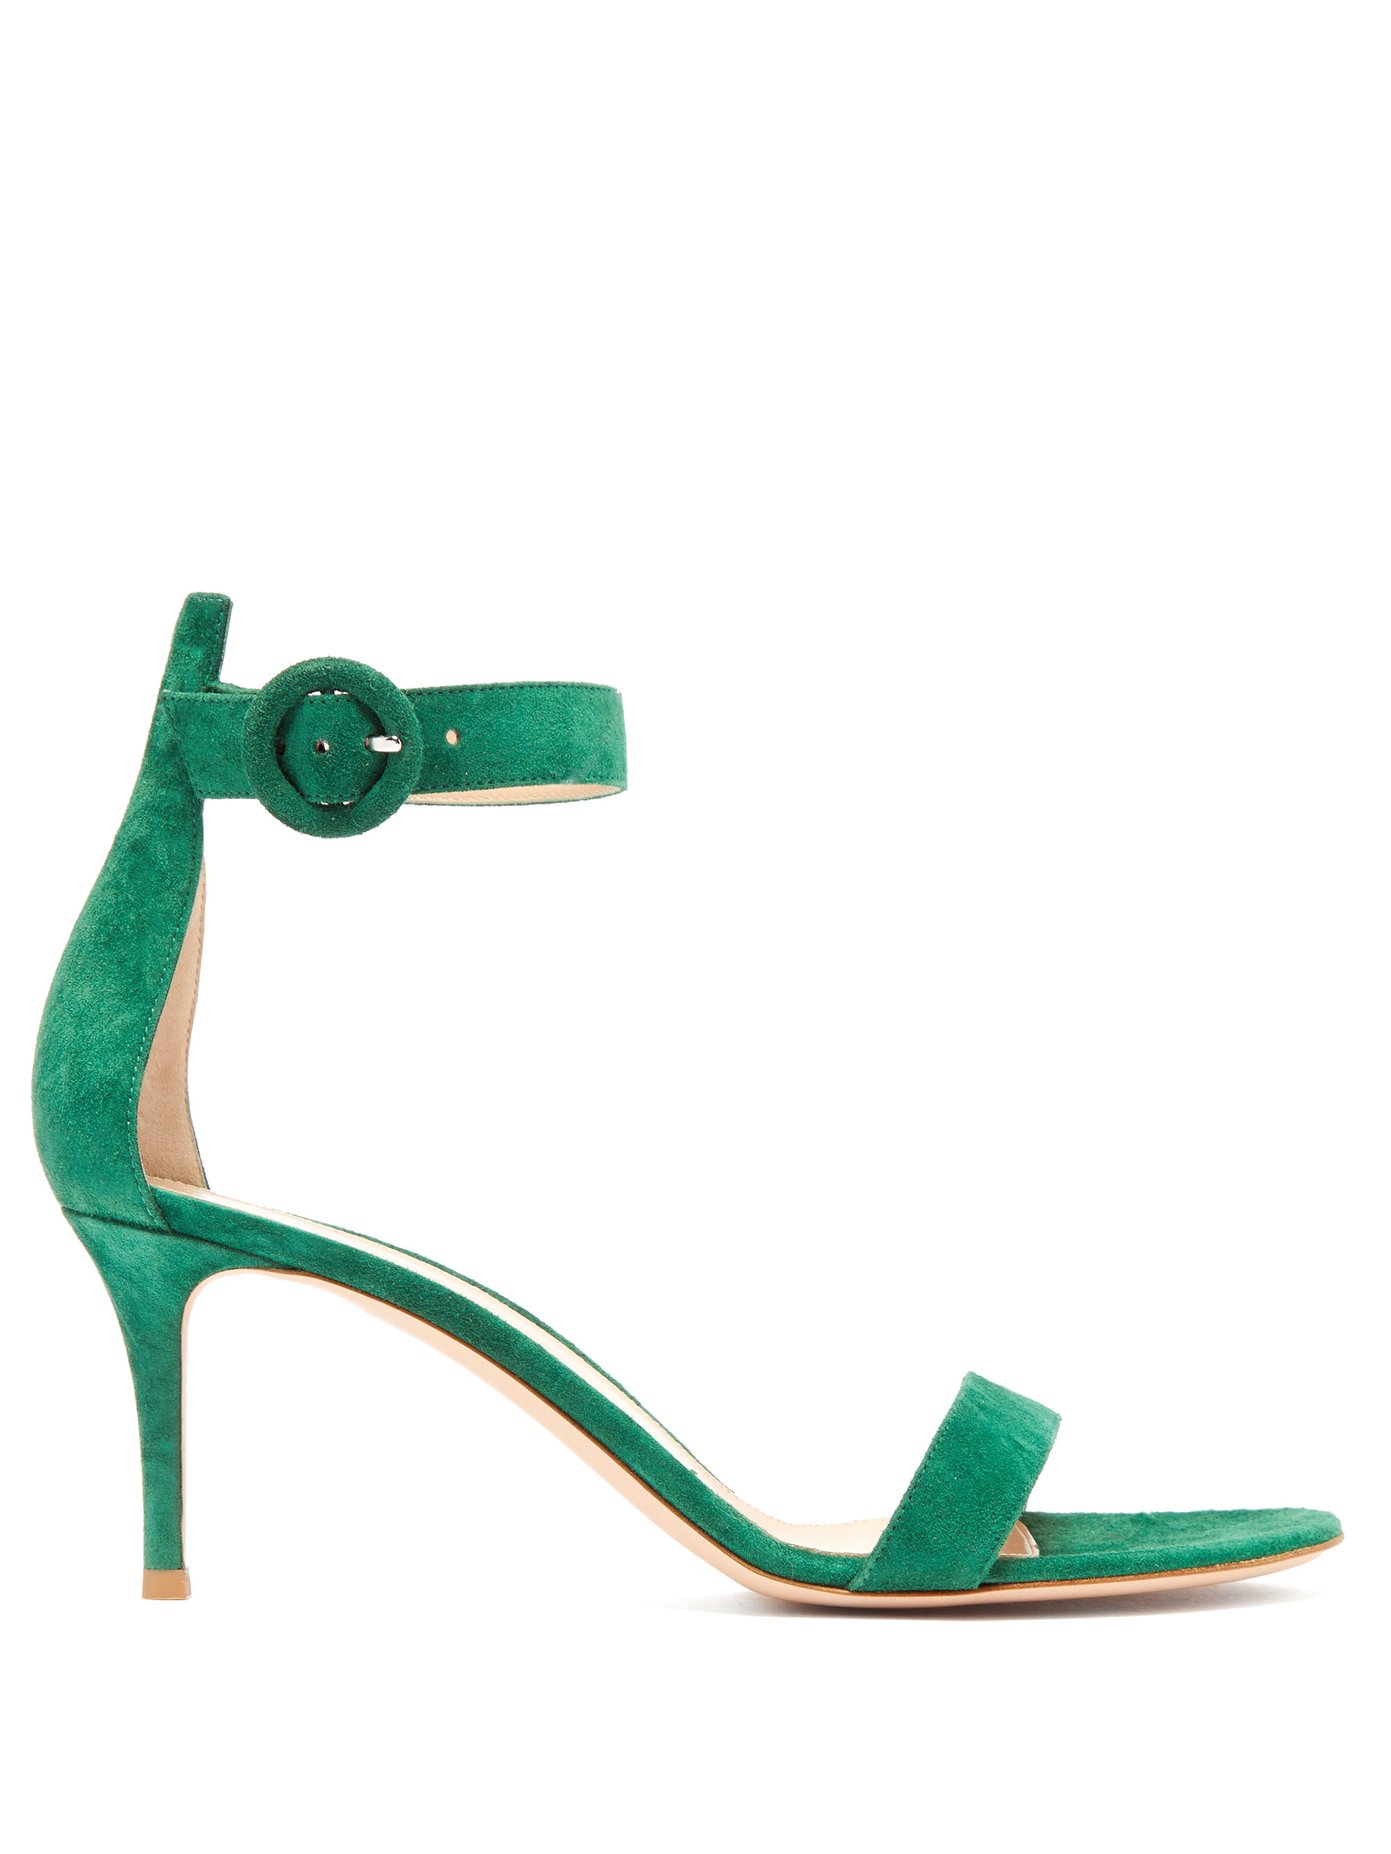 gianvito rossi green sandals